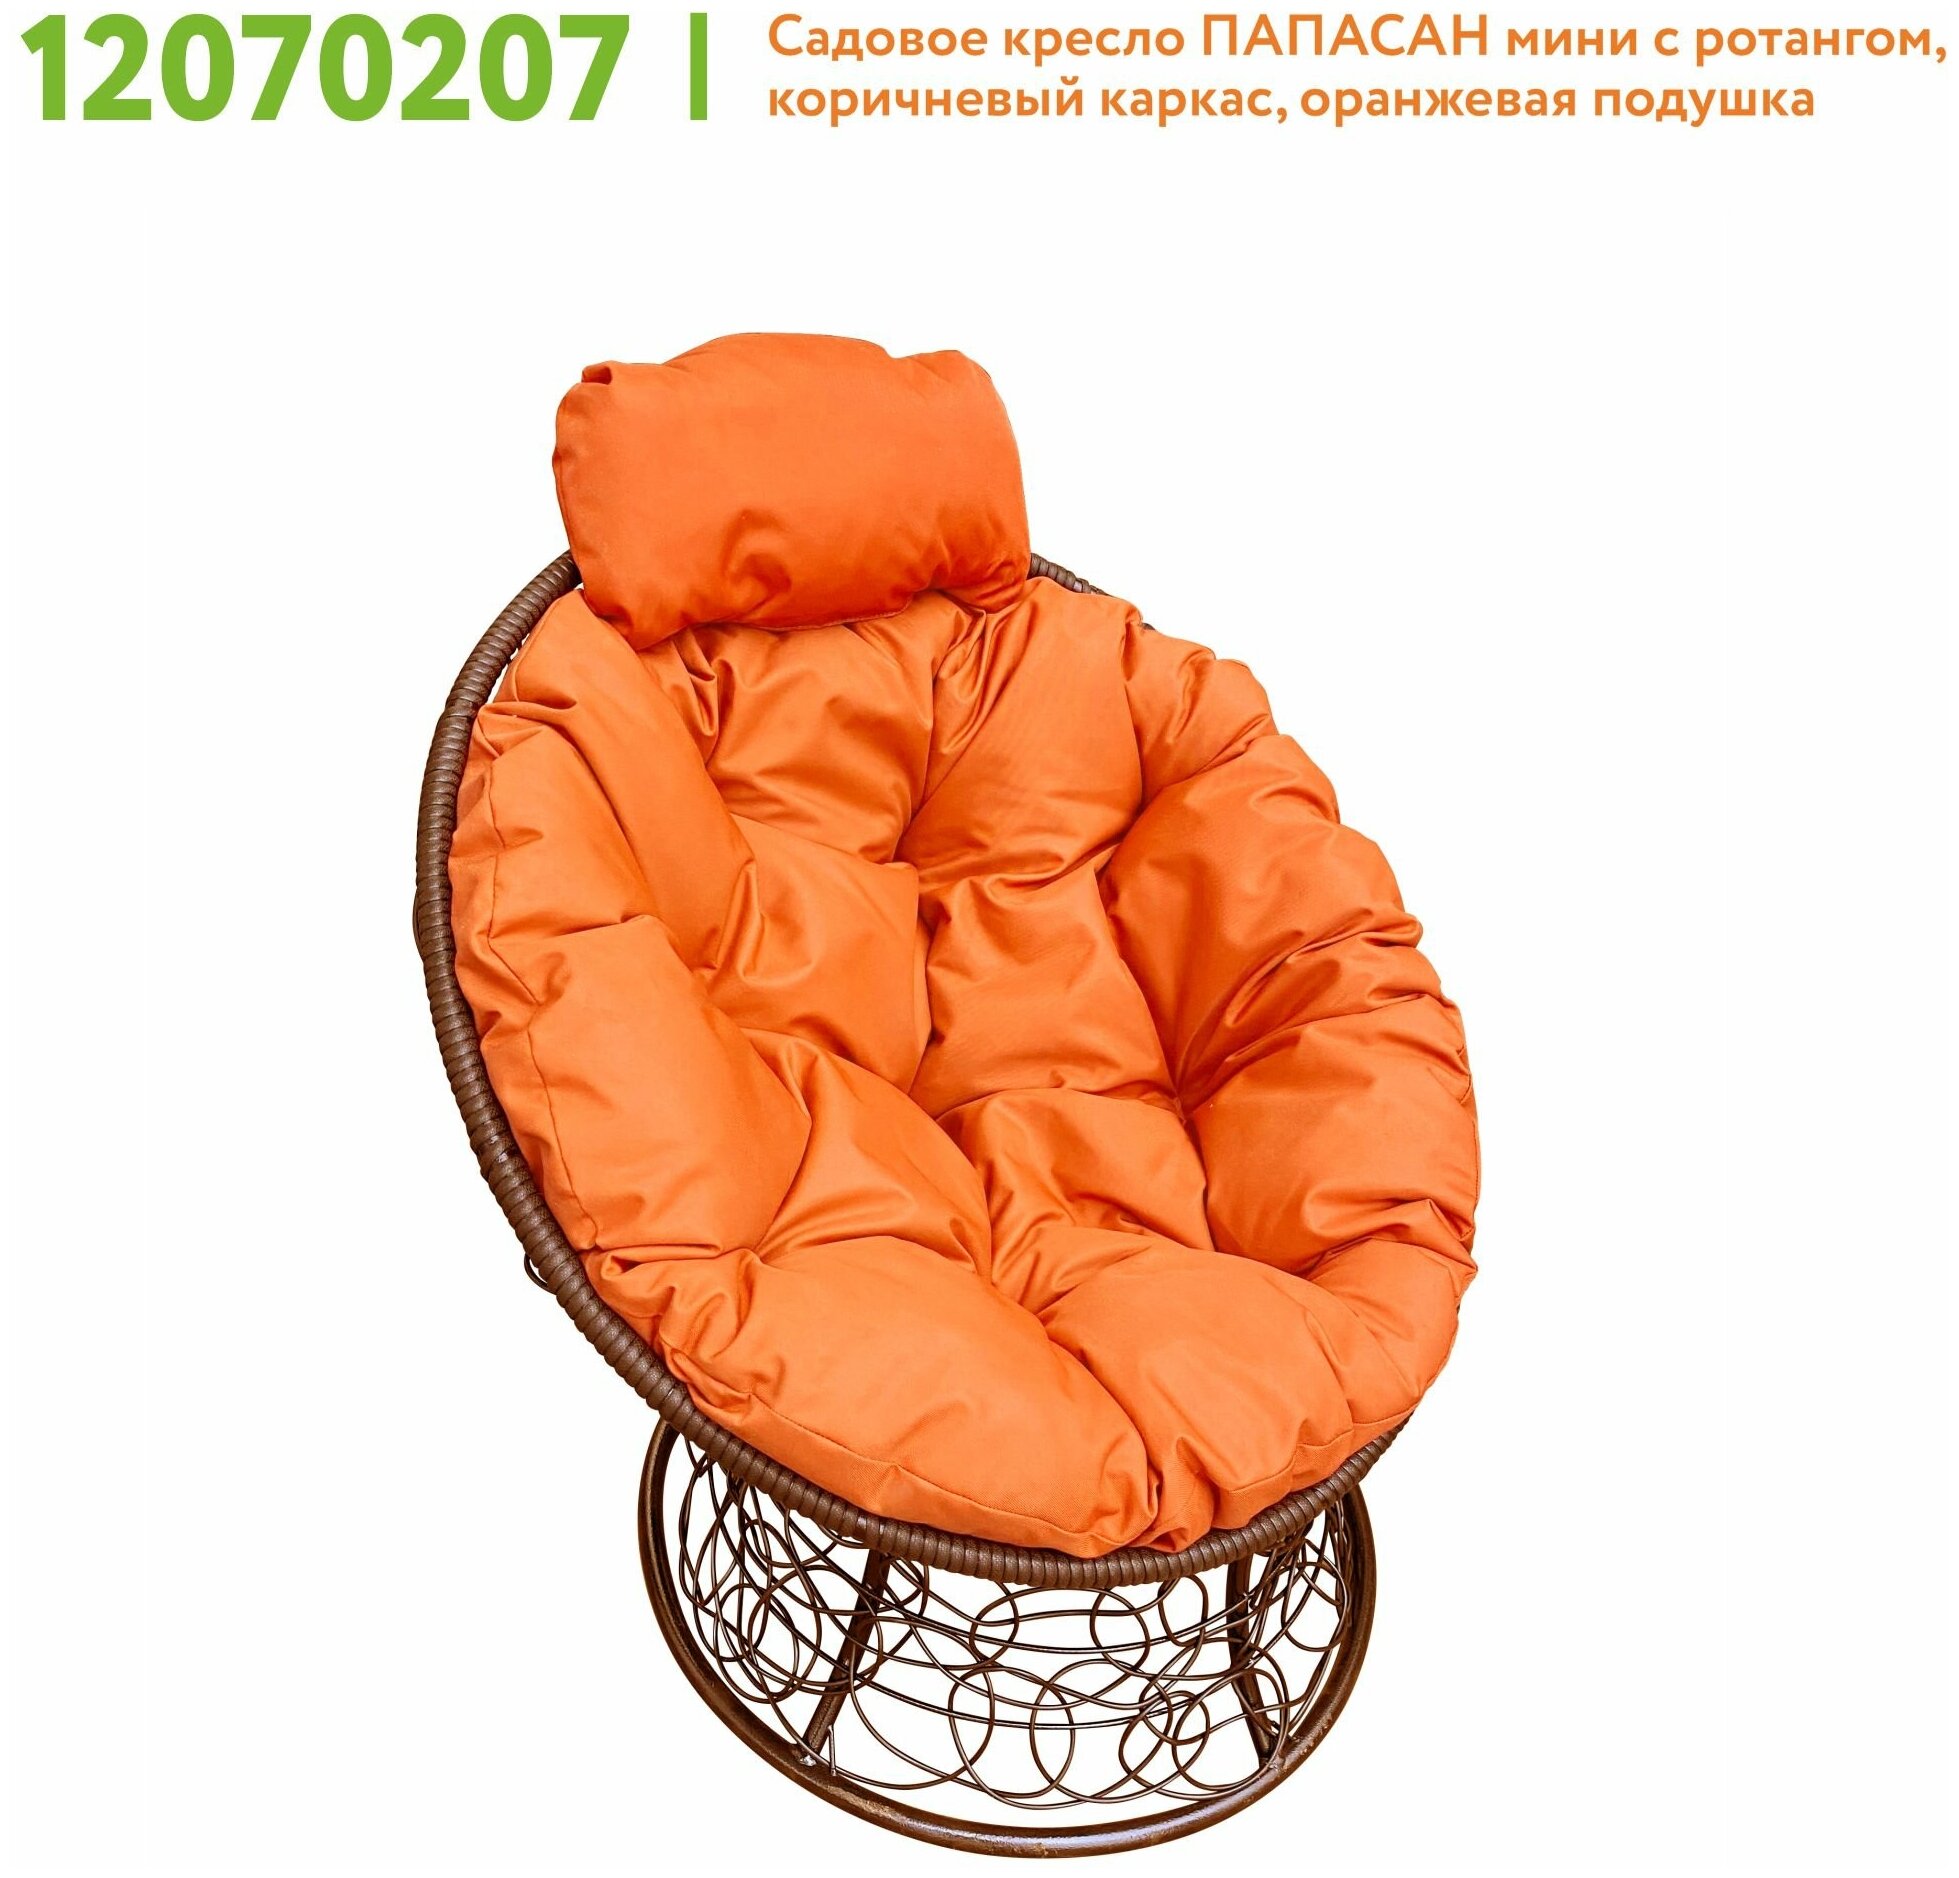 Кресло m-group папасан мини ротанг коричневое, оранжевая подушка - фотография № 7